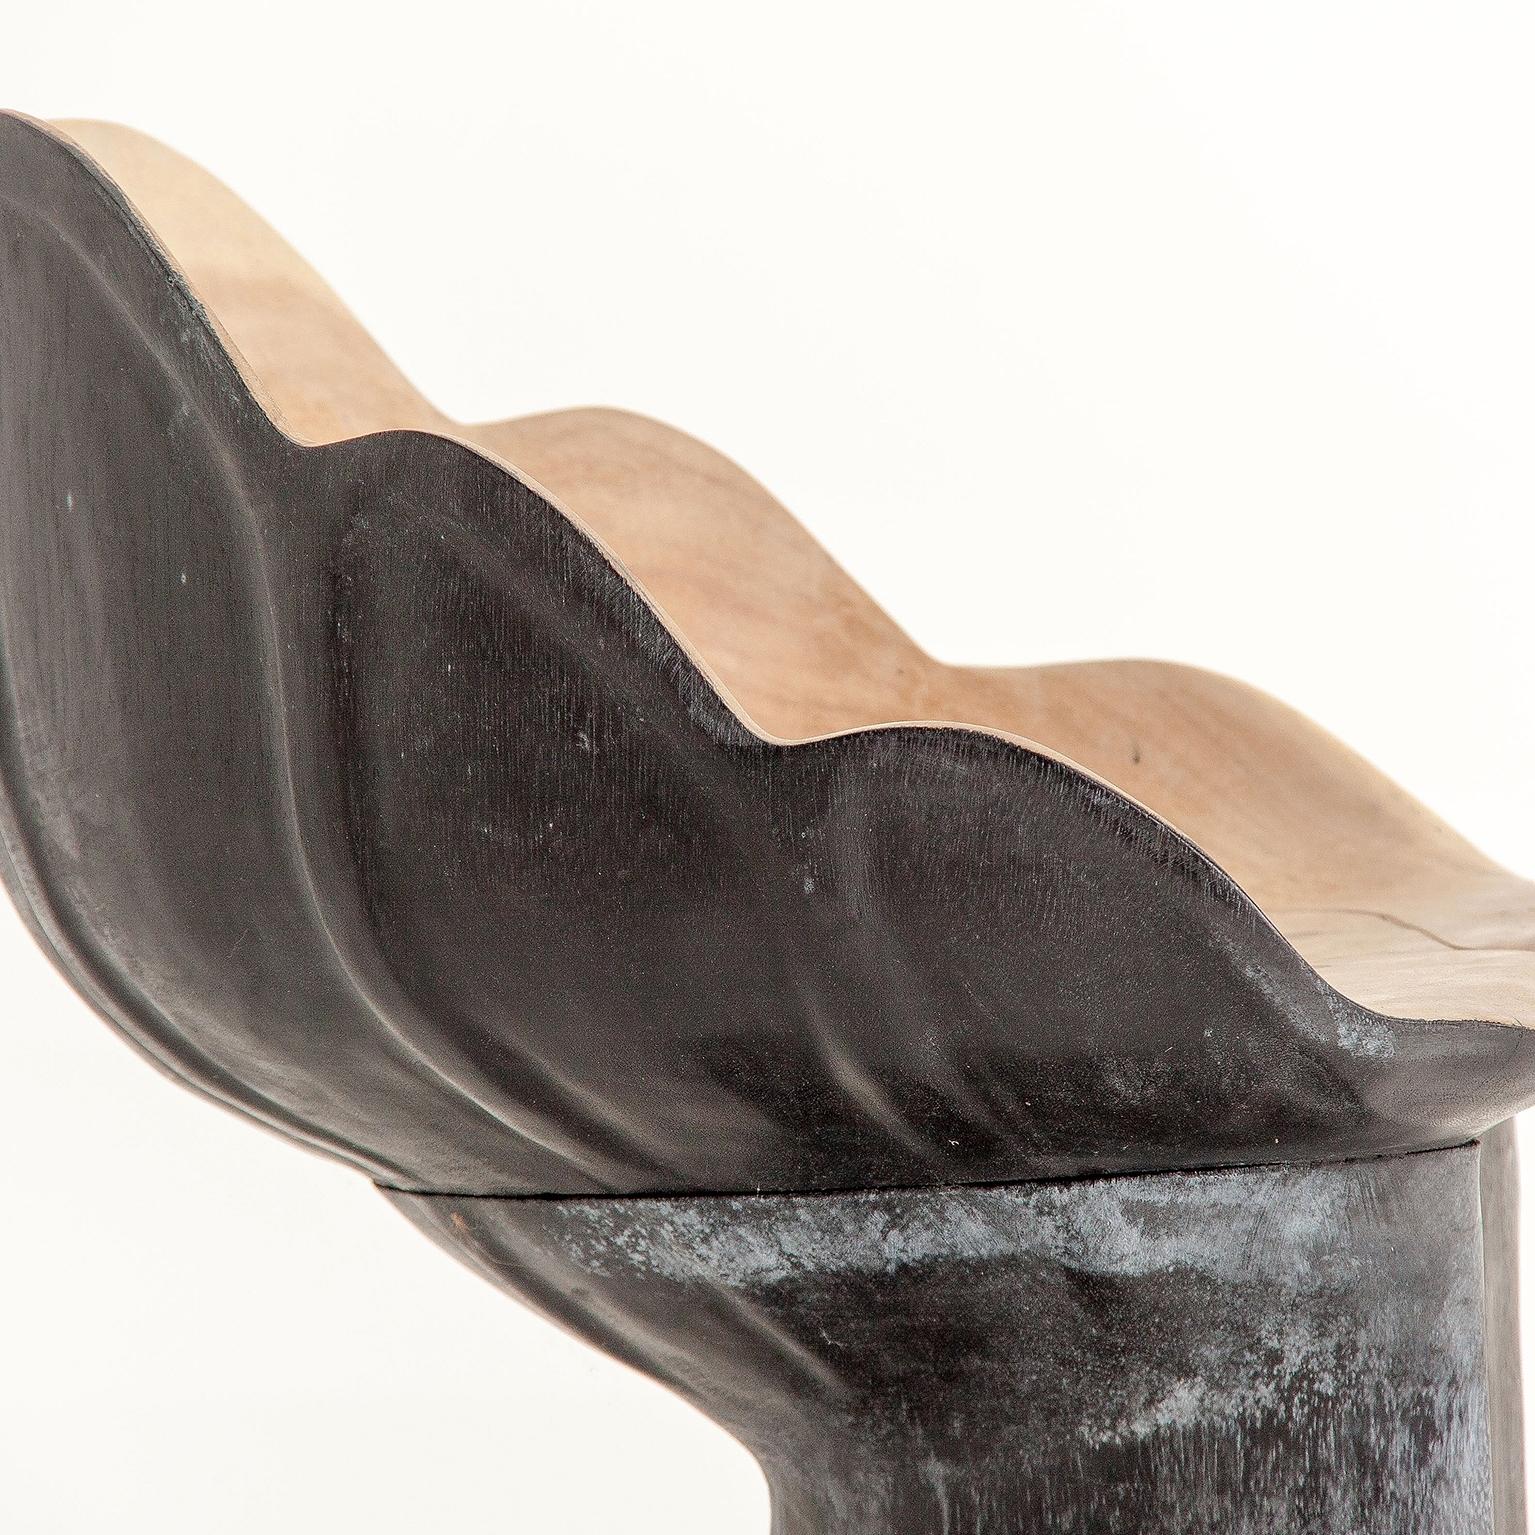 Organic Modern Solid Wood Leaf Chair